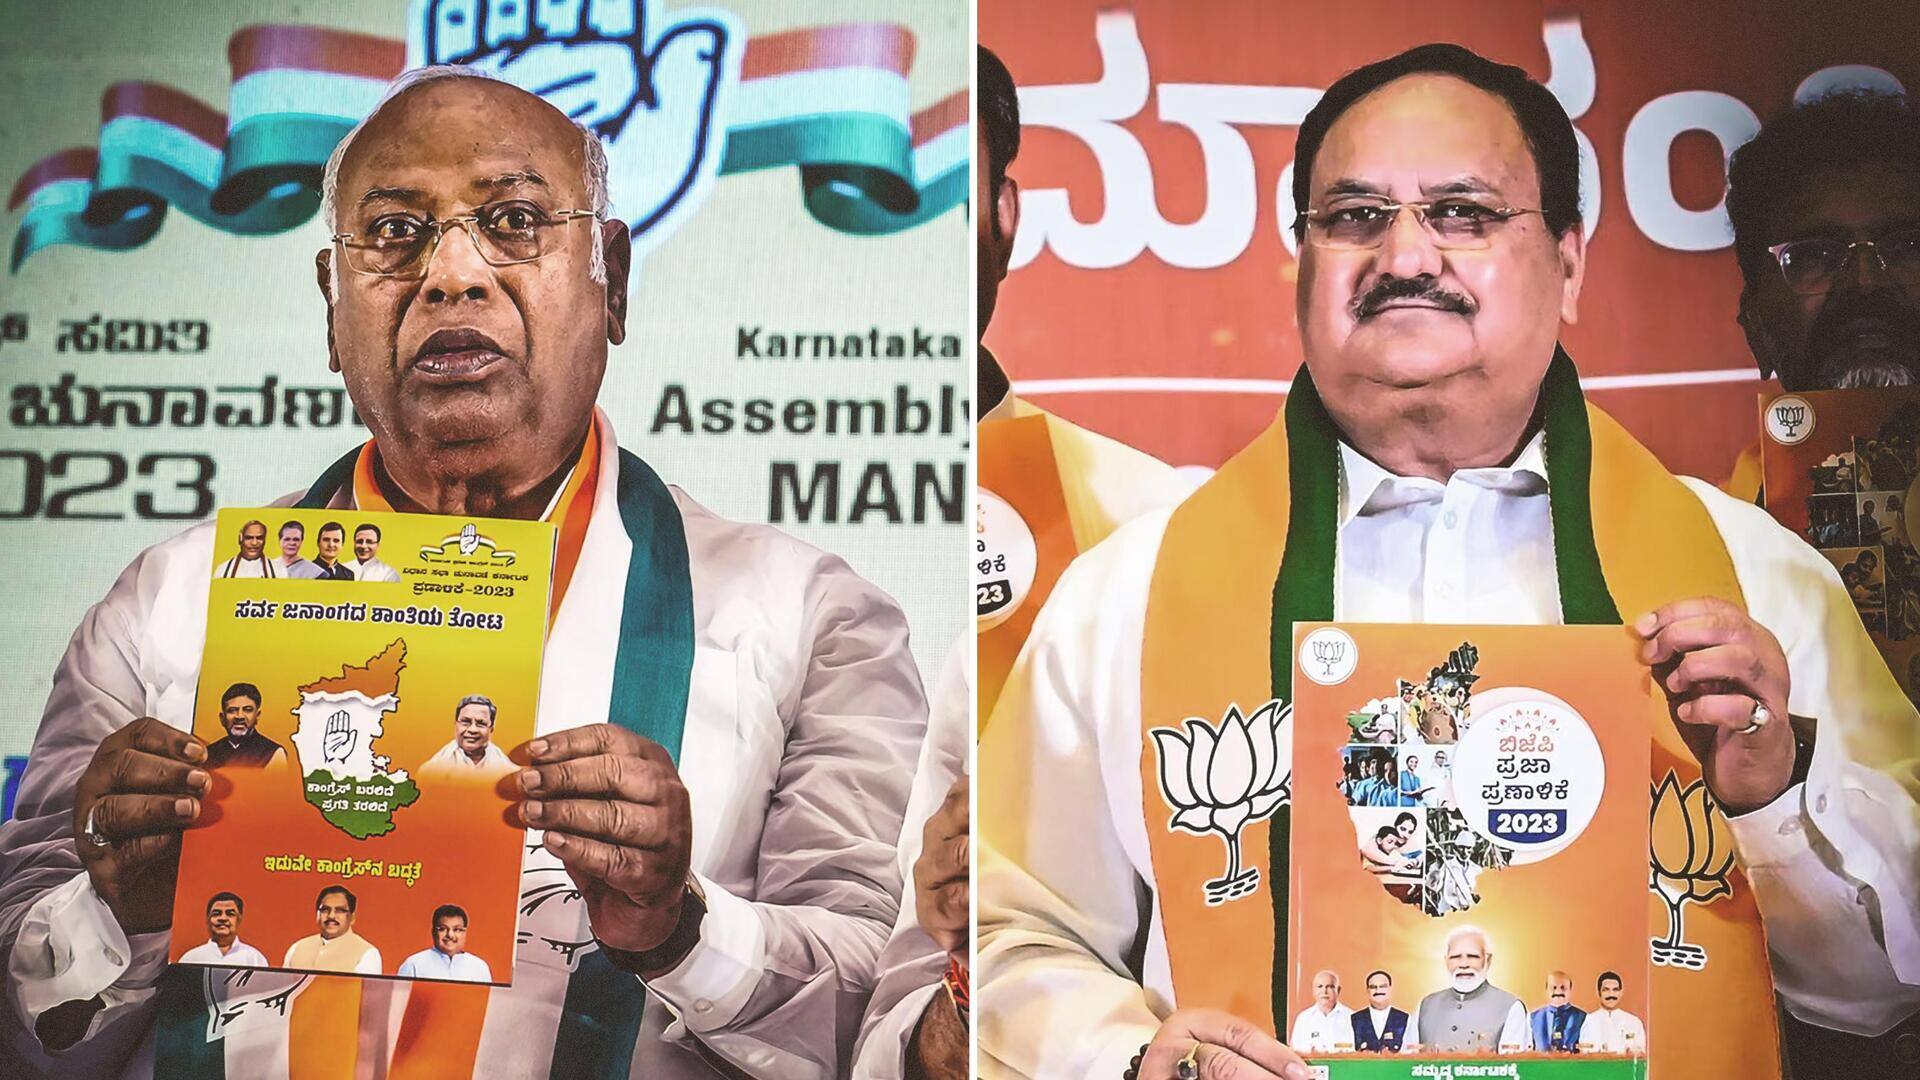 NewsBytesExplainer: कर्नाटक में भाजपा और कांग्रेस के घोषणापत्रों में किए गए वादे और उनकी तुलना 